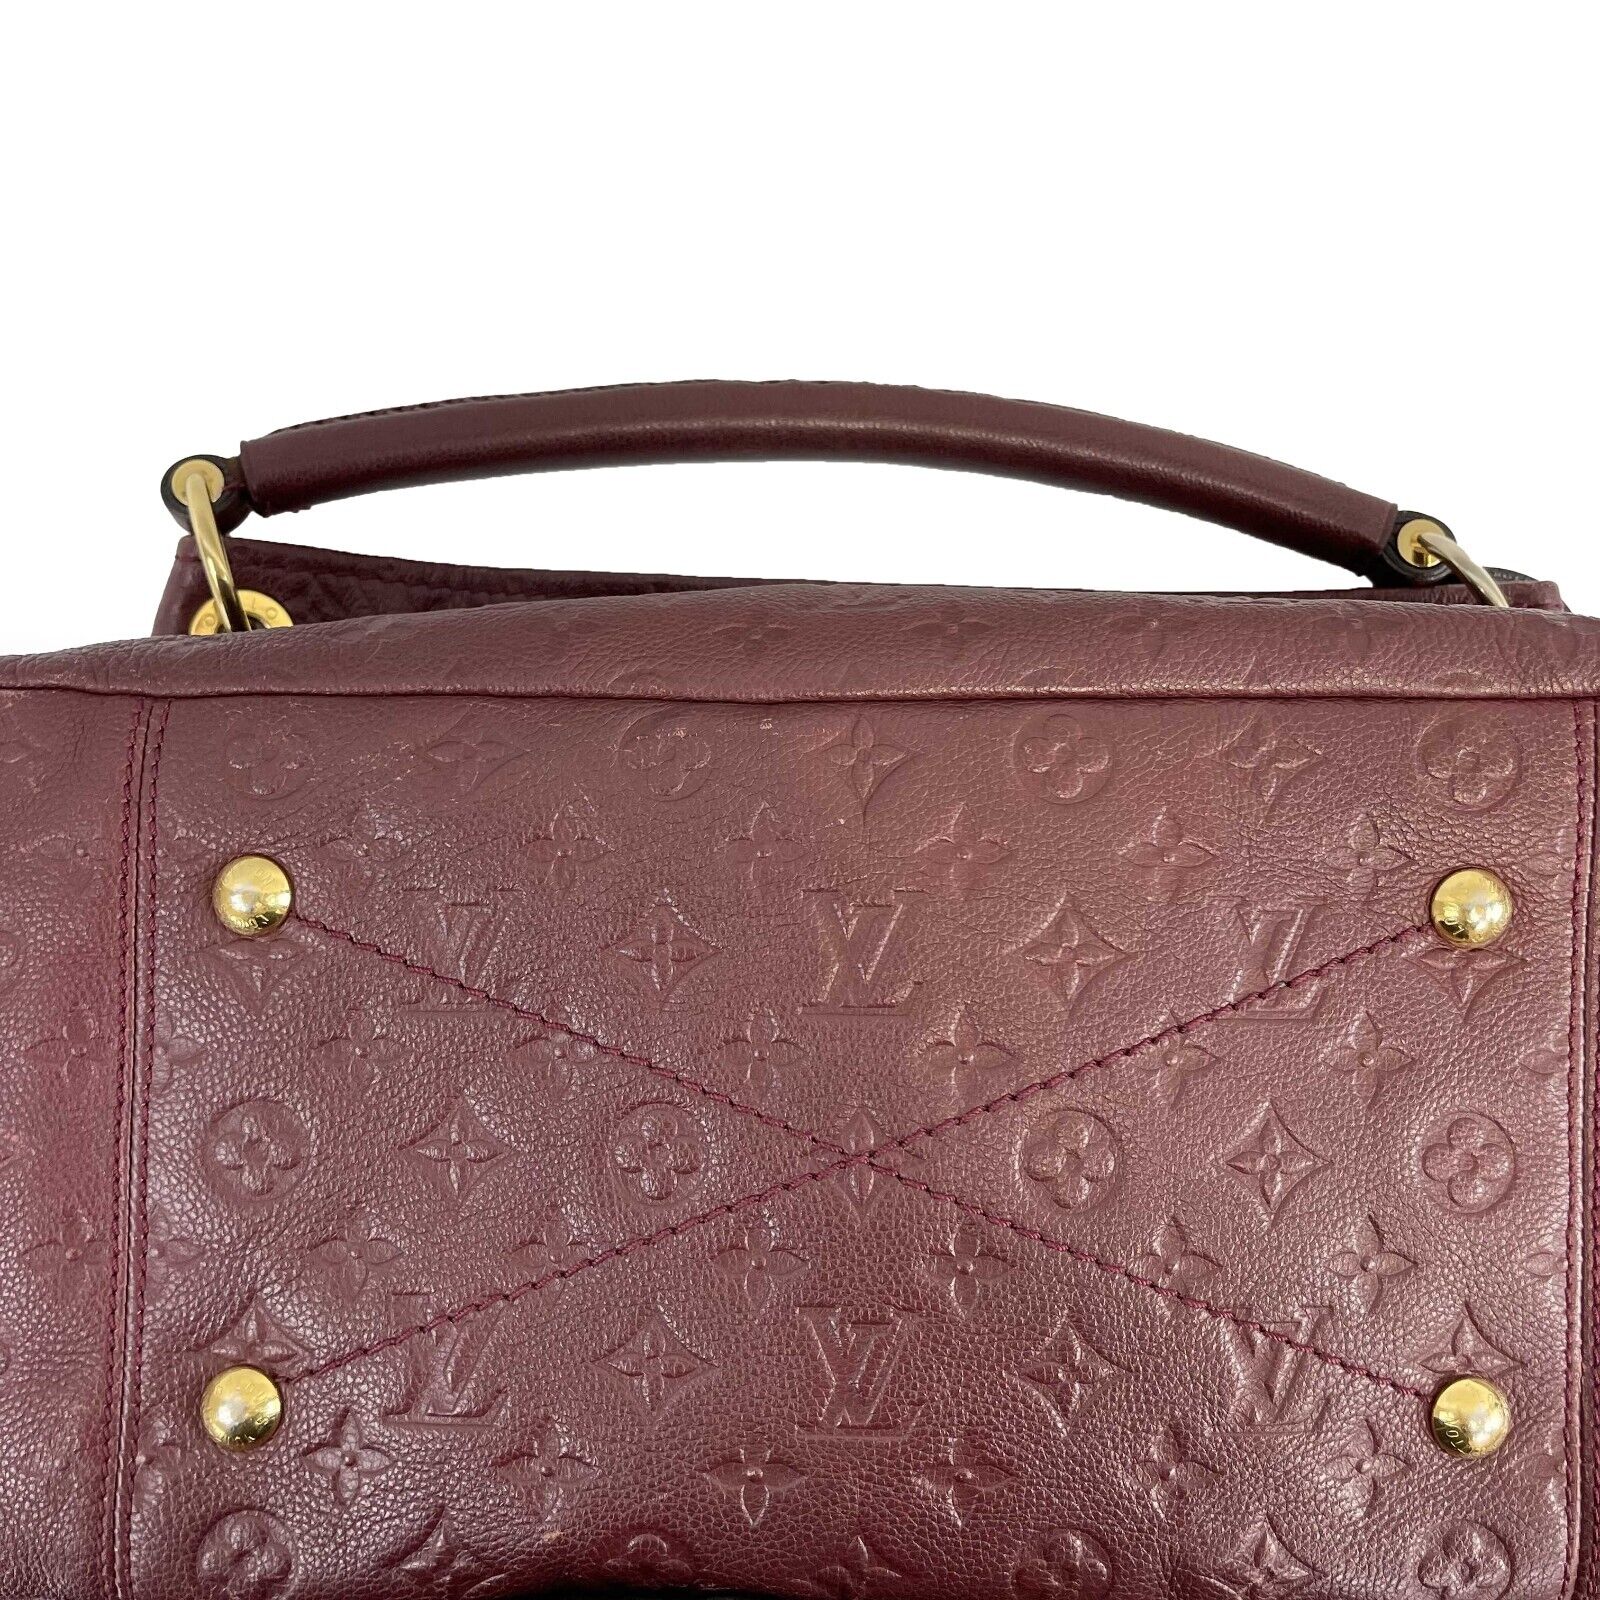 Louis Vuitton Handbag in Matte Burgundy Empreinte Monogram Leather and